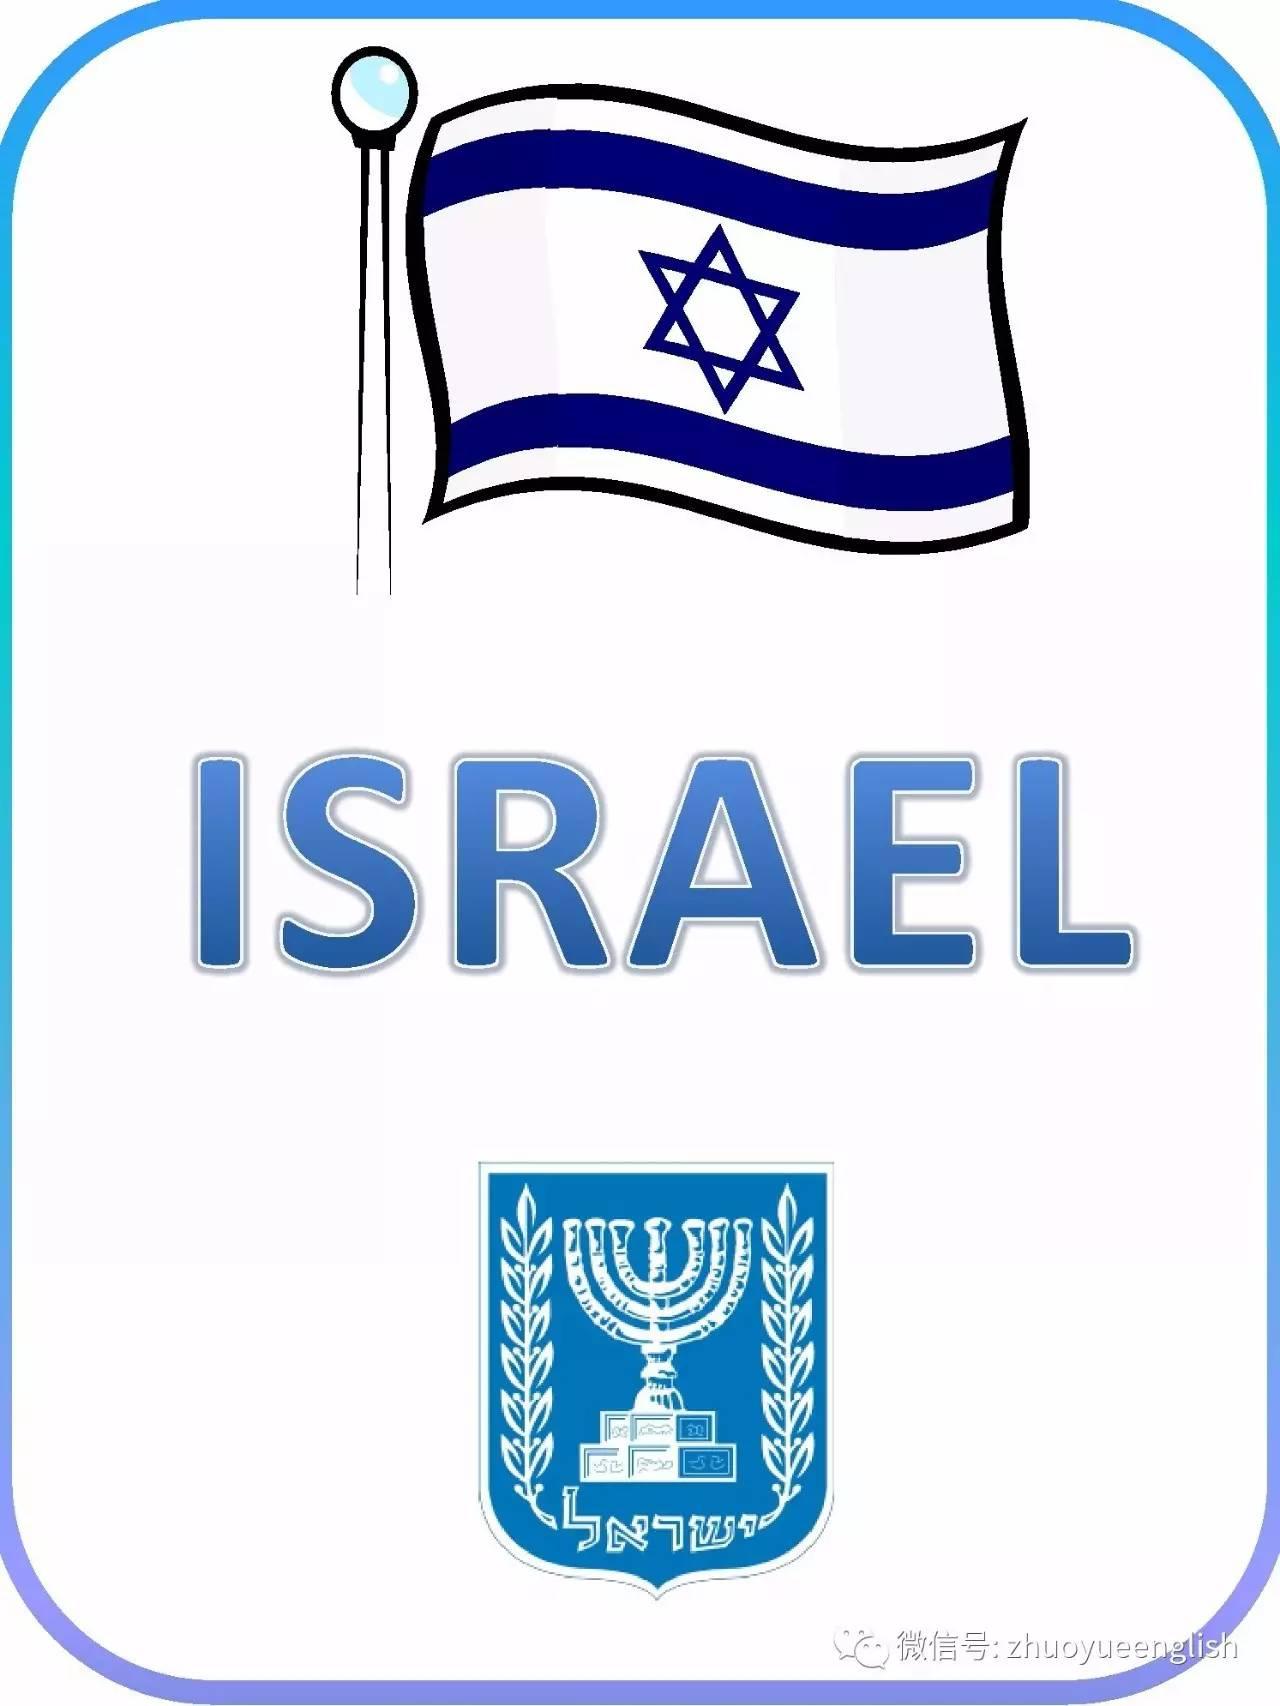 以色列国旗白底兰色条纹,中间有一颗蓝色六角星,称之为"大卫之星"